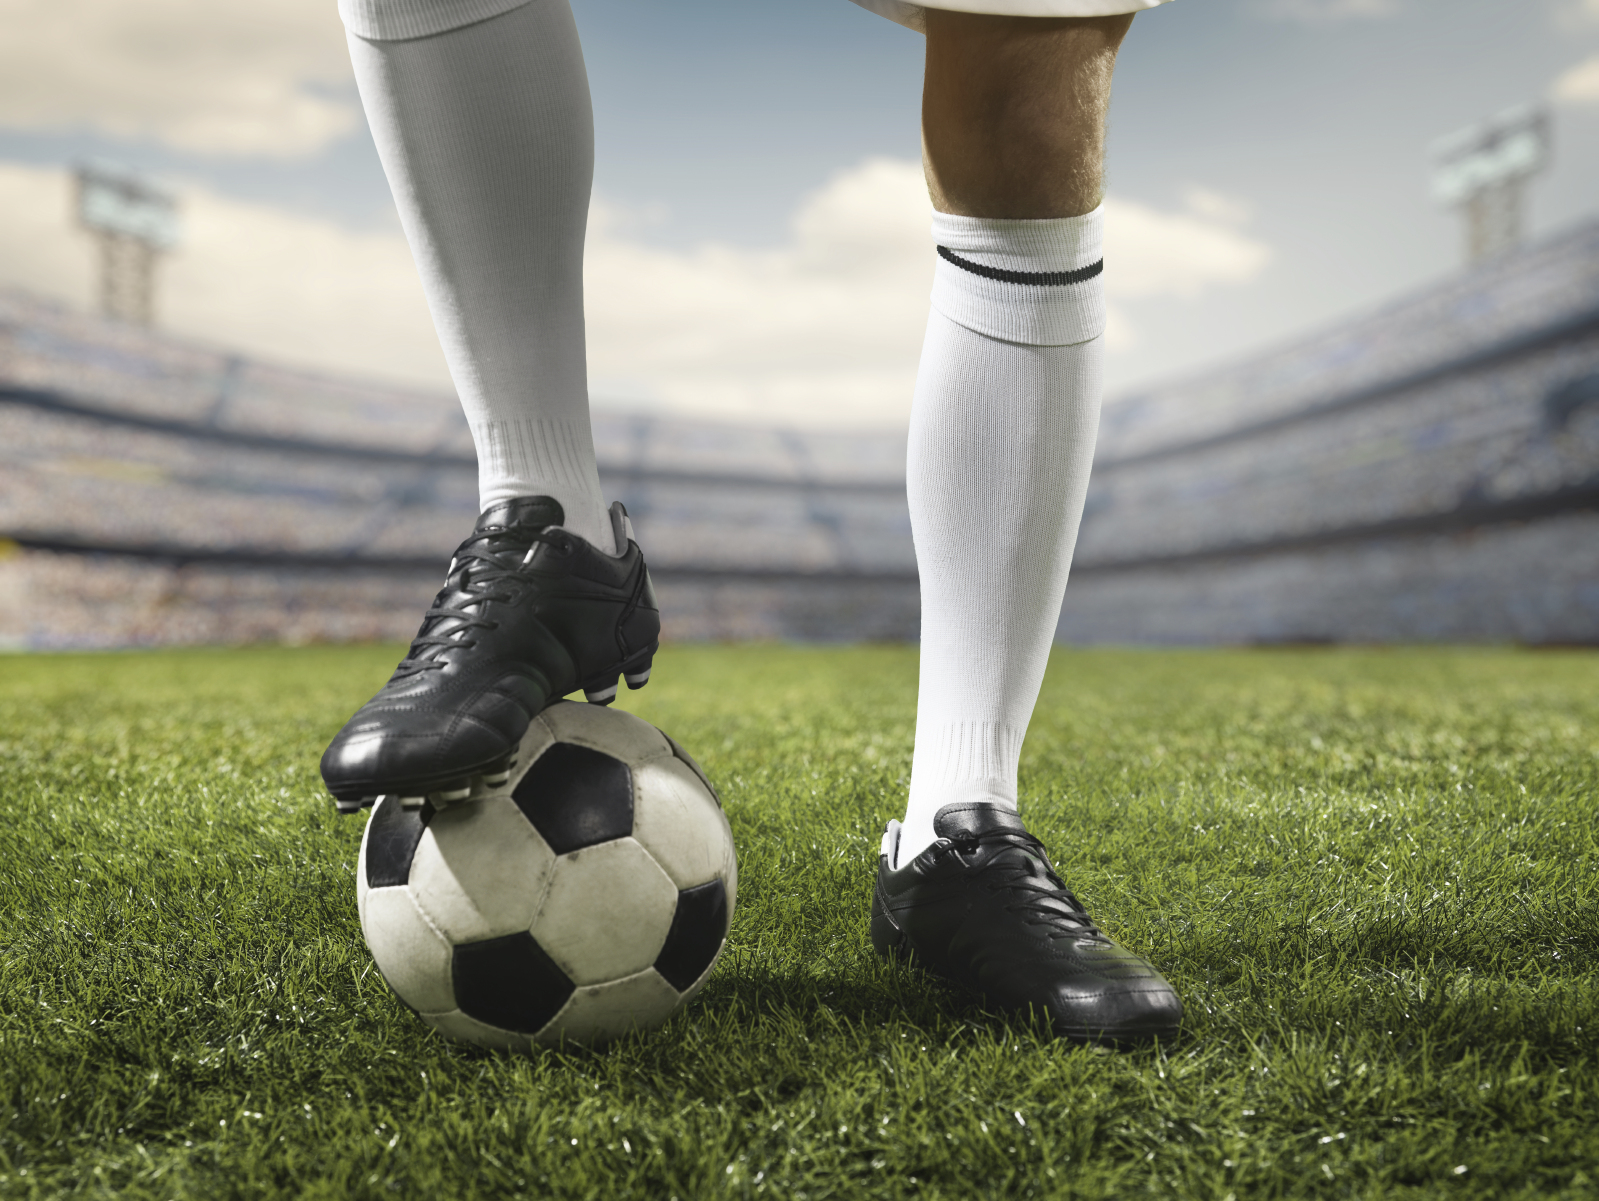 Le foot se joue avec les pieds mais se gagne aussi avec la tête. © Aksonov, Istock.com